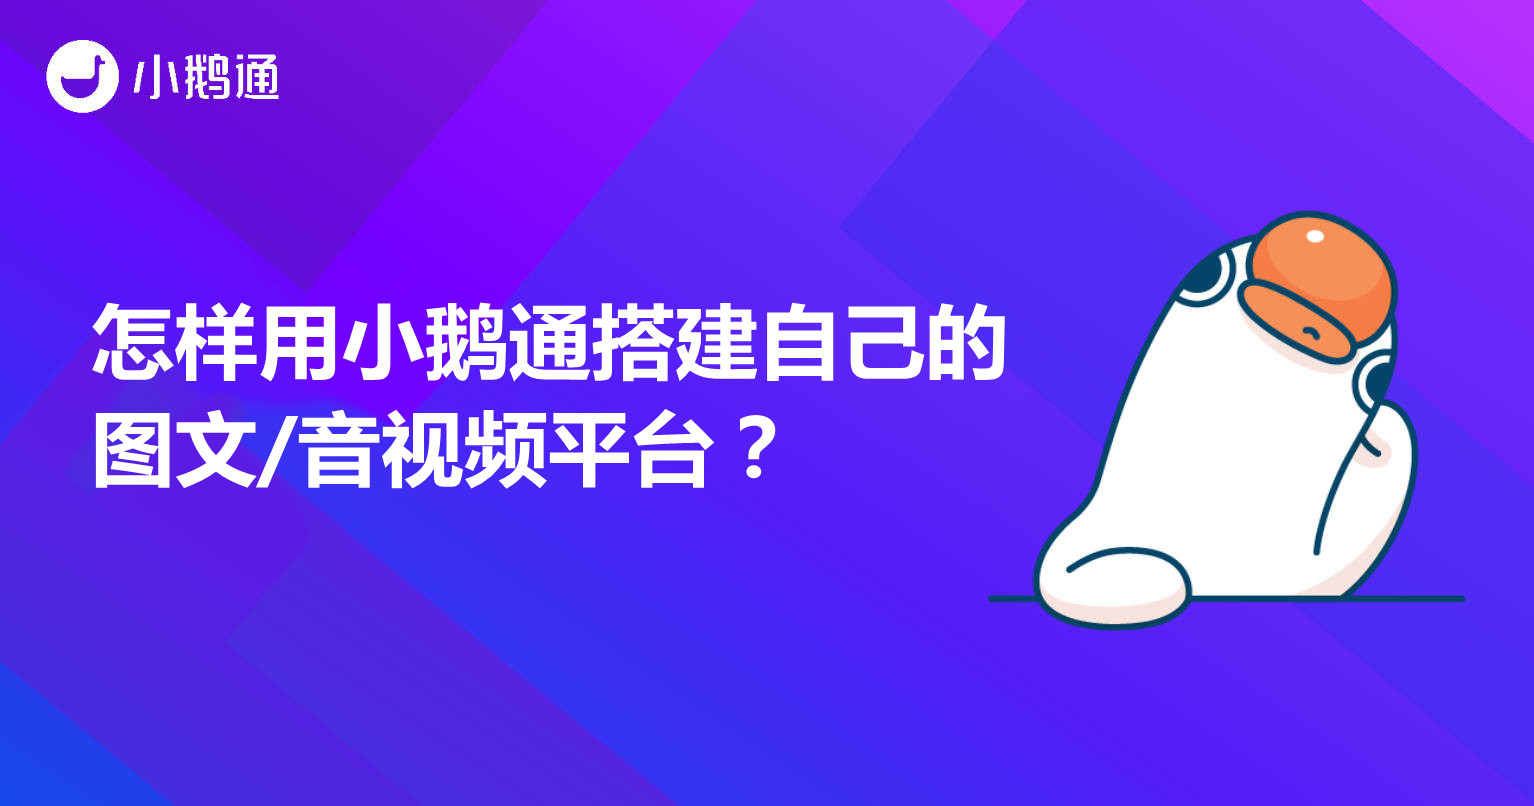 荆州怎样用小鹅通搭建自己的图文/音视频平台？